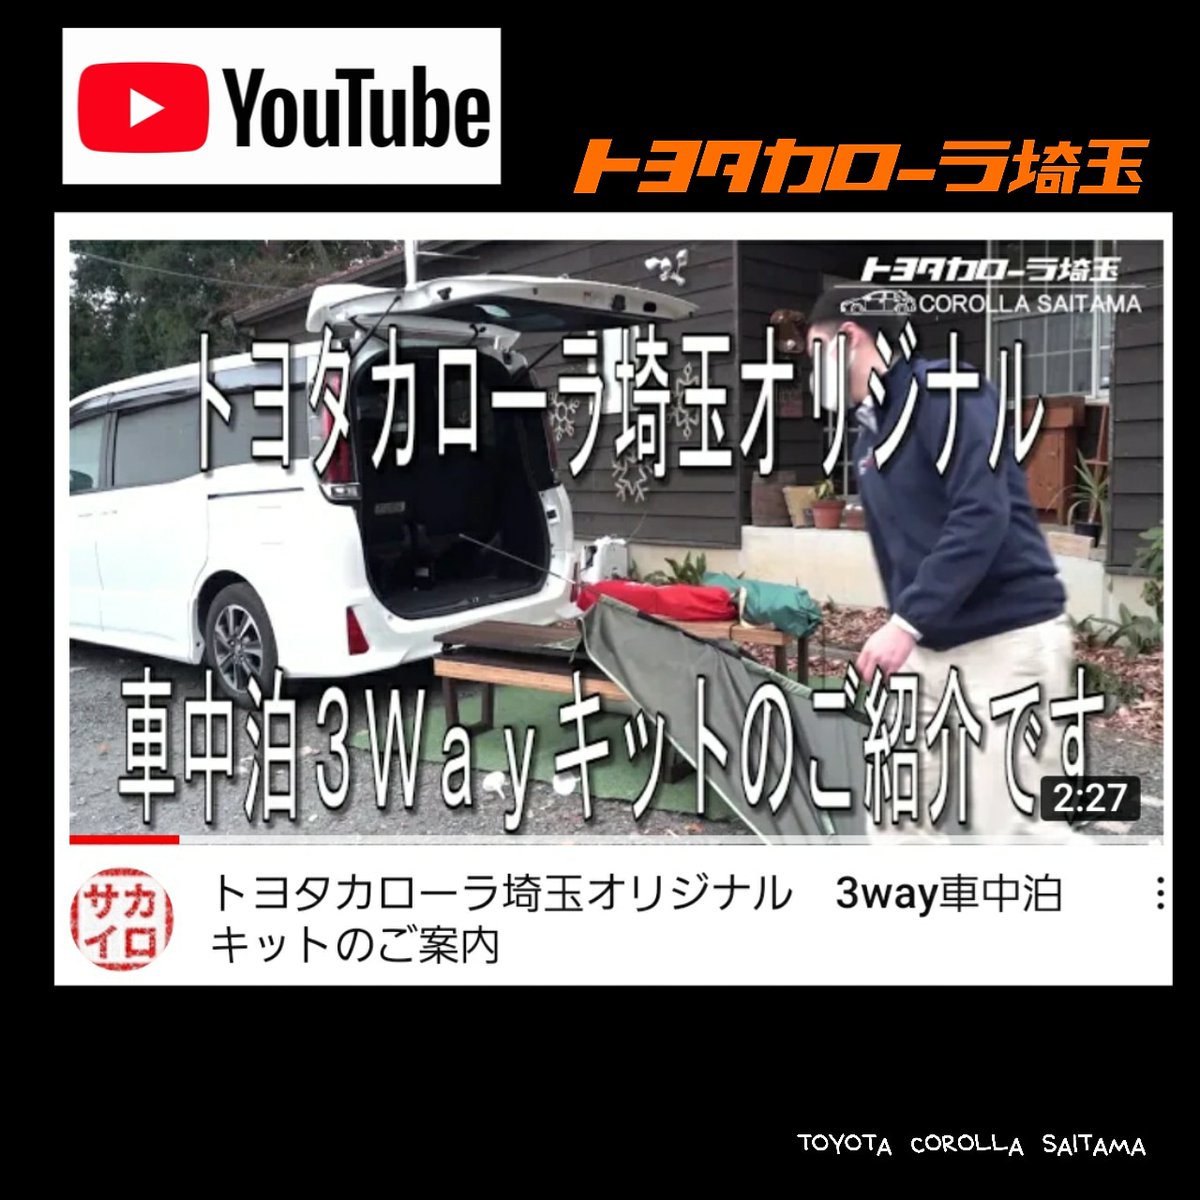 ট ইট র Toyota Corolla Saitama イベント トヨタカローラ埼玉 公式youtube カローラ埼玉オリジナル ノア専用 車中泊キット 3wayチェア をご紹介します T Co 4bvpjvltfk 詳しくは こちらからご覧ください T Co Vdrv1nujoo トヨタ